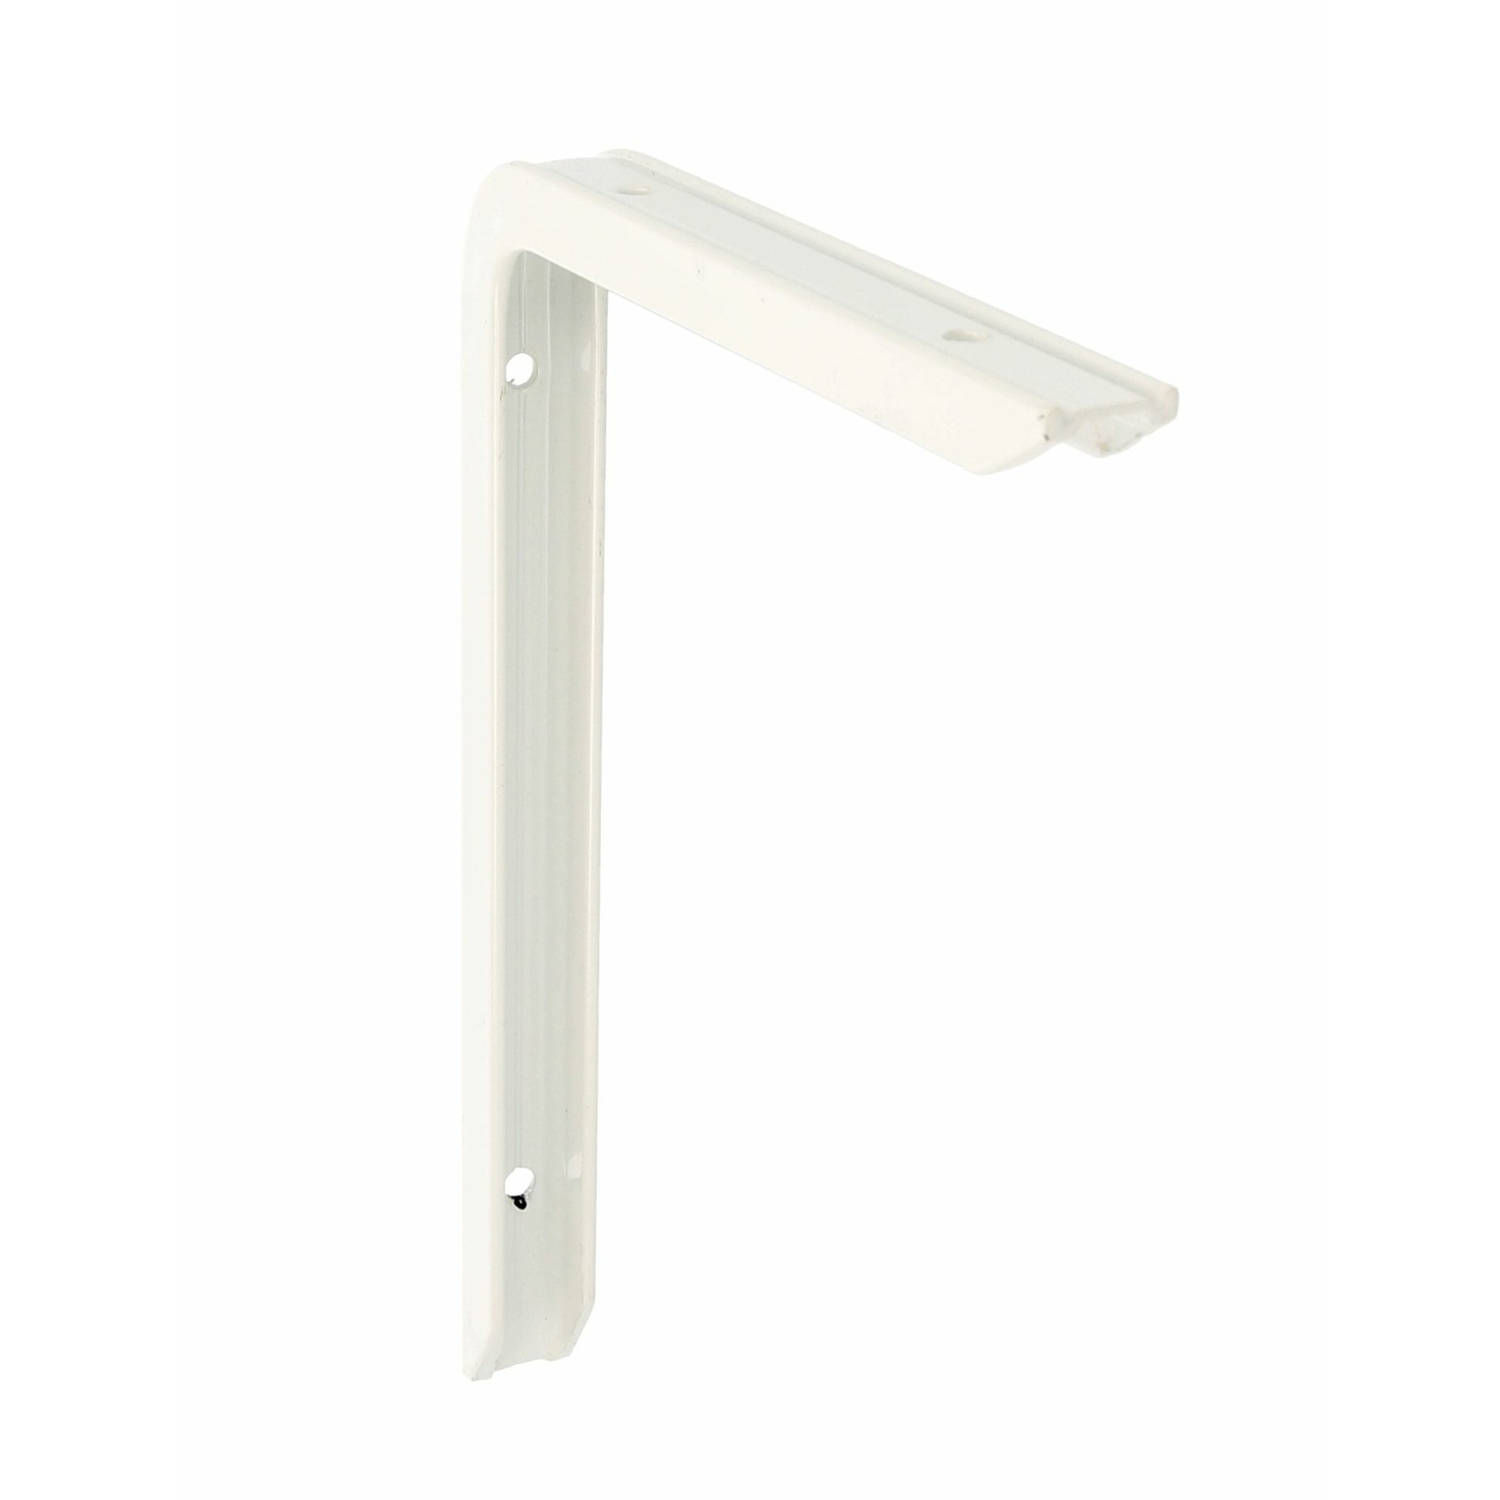 AMIG Plankdrager/planksteun - aluminium - gelakt wit - H120 x B80 mm - max gewicht 75 kg - boekenplank steunen